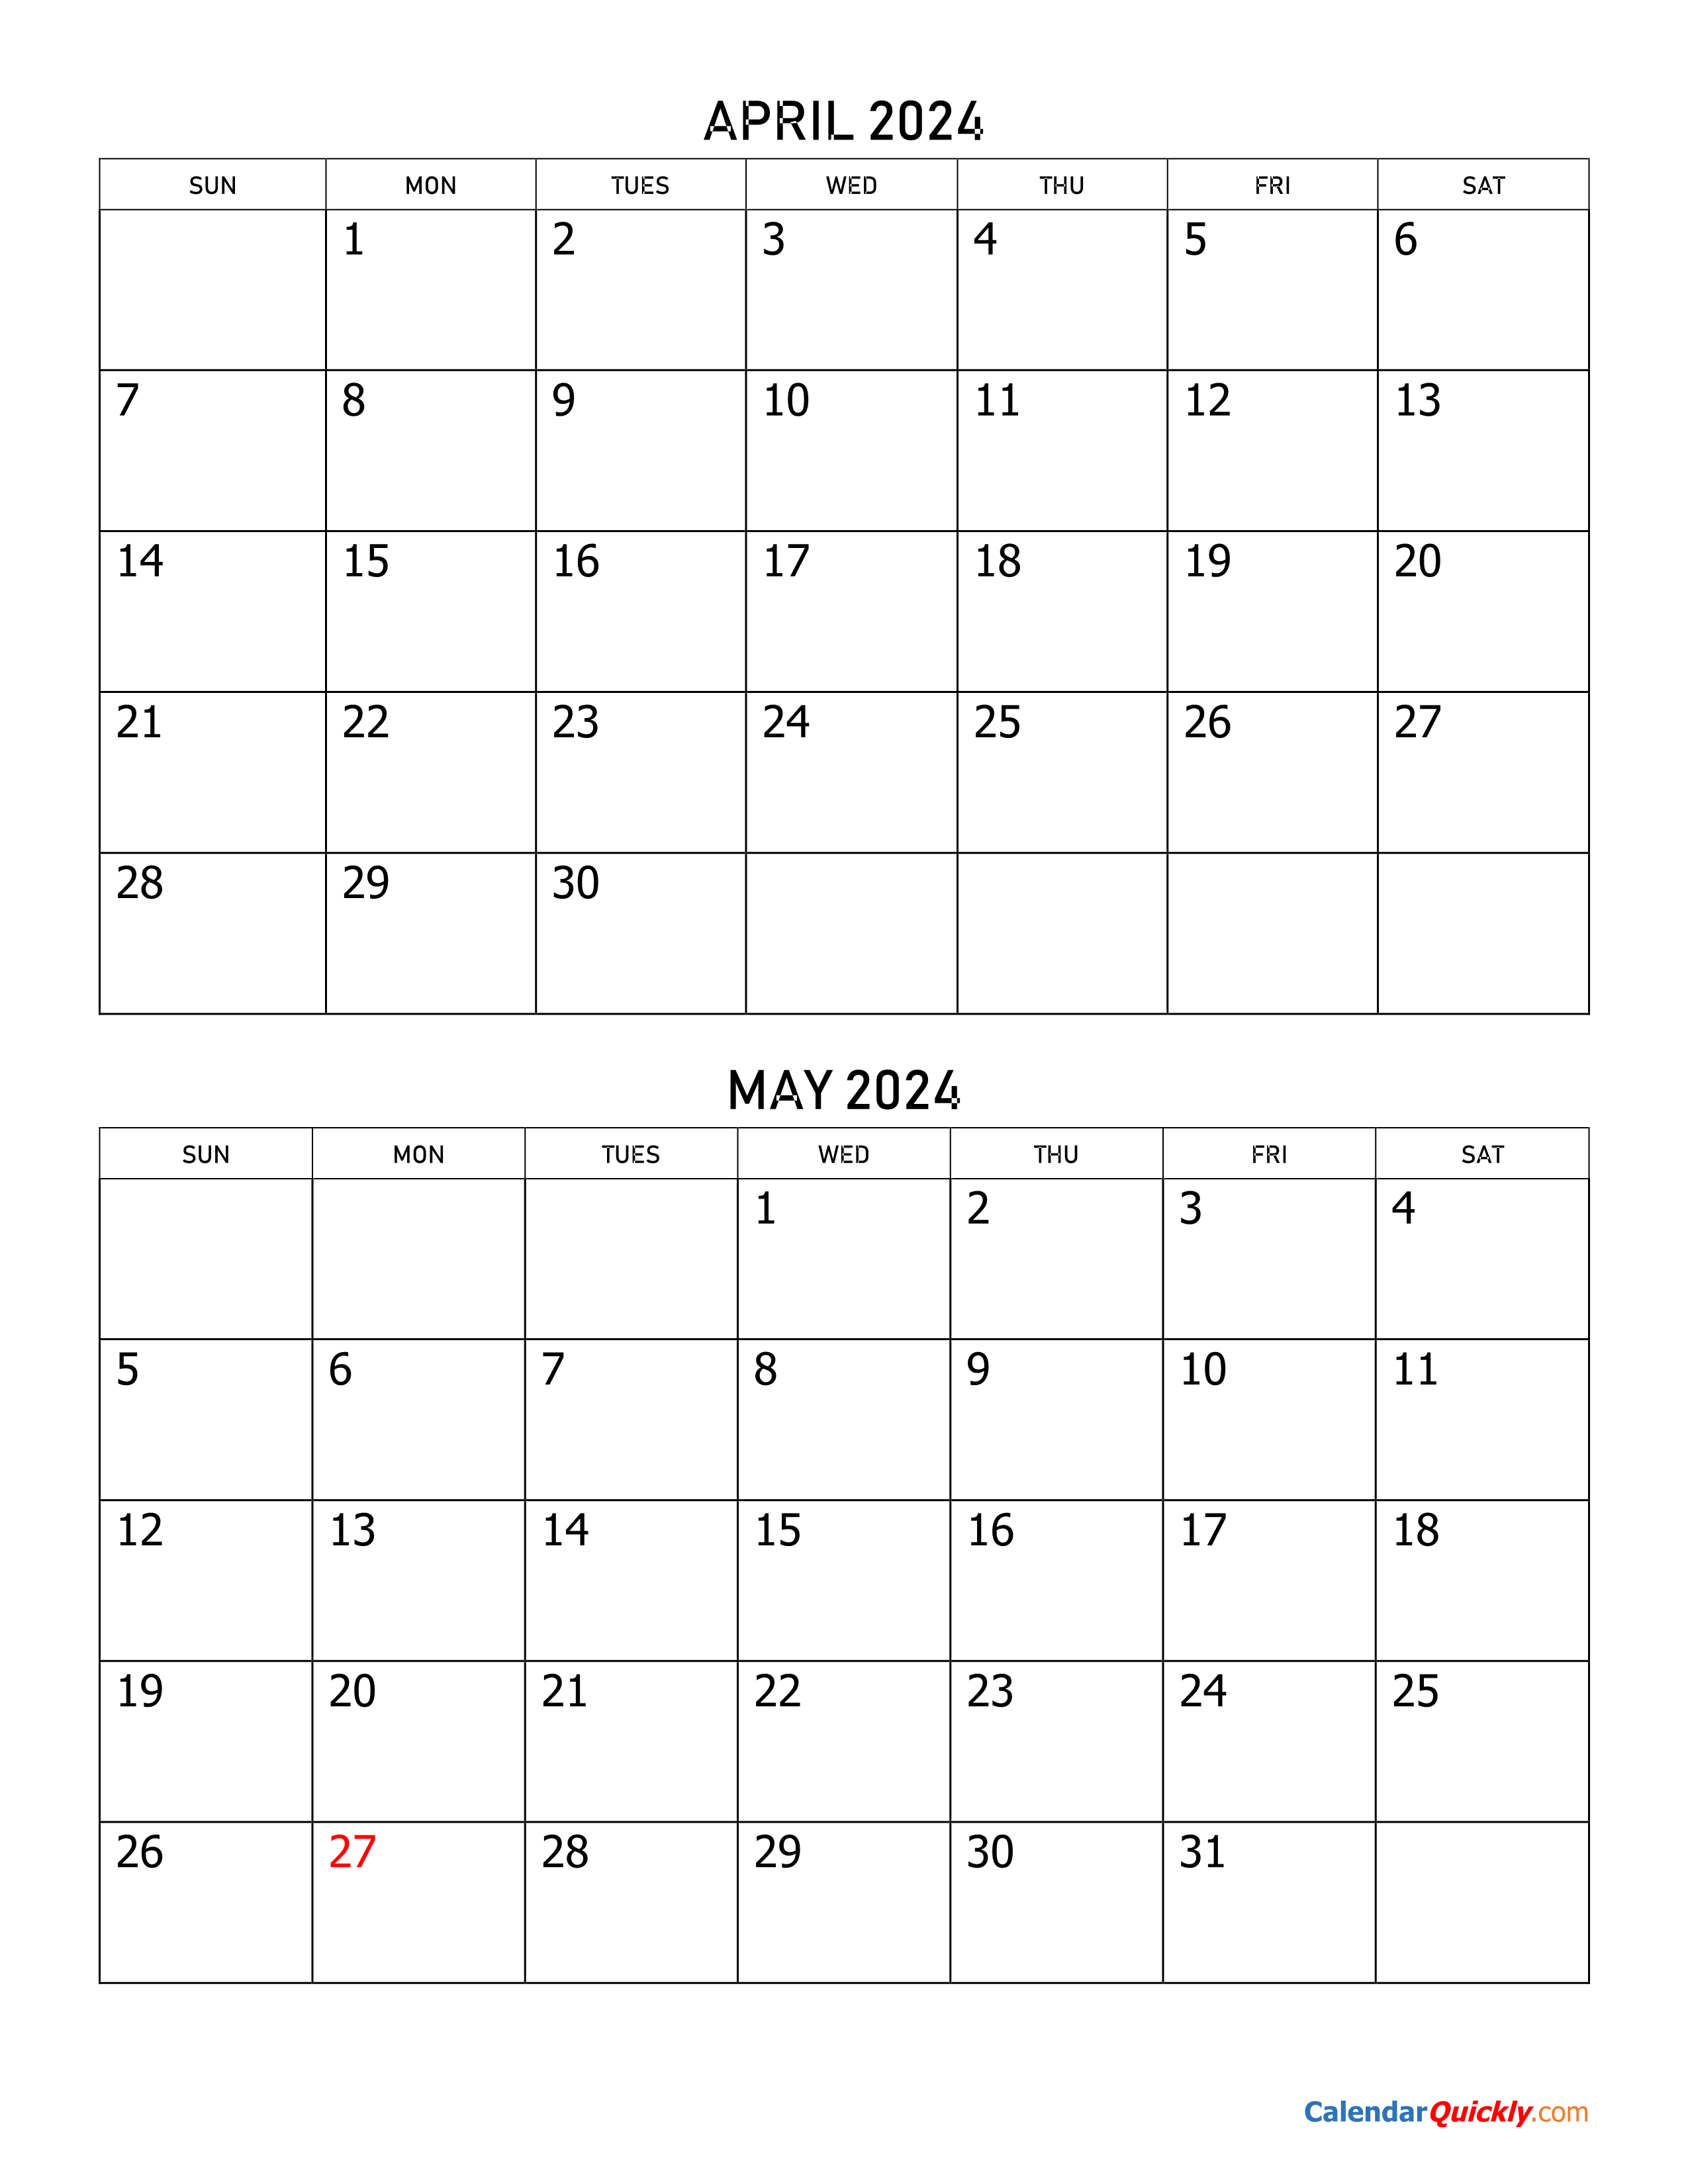 April and May 2024 Calendar | Calendar Quickly